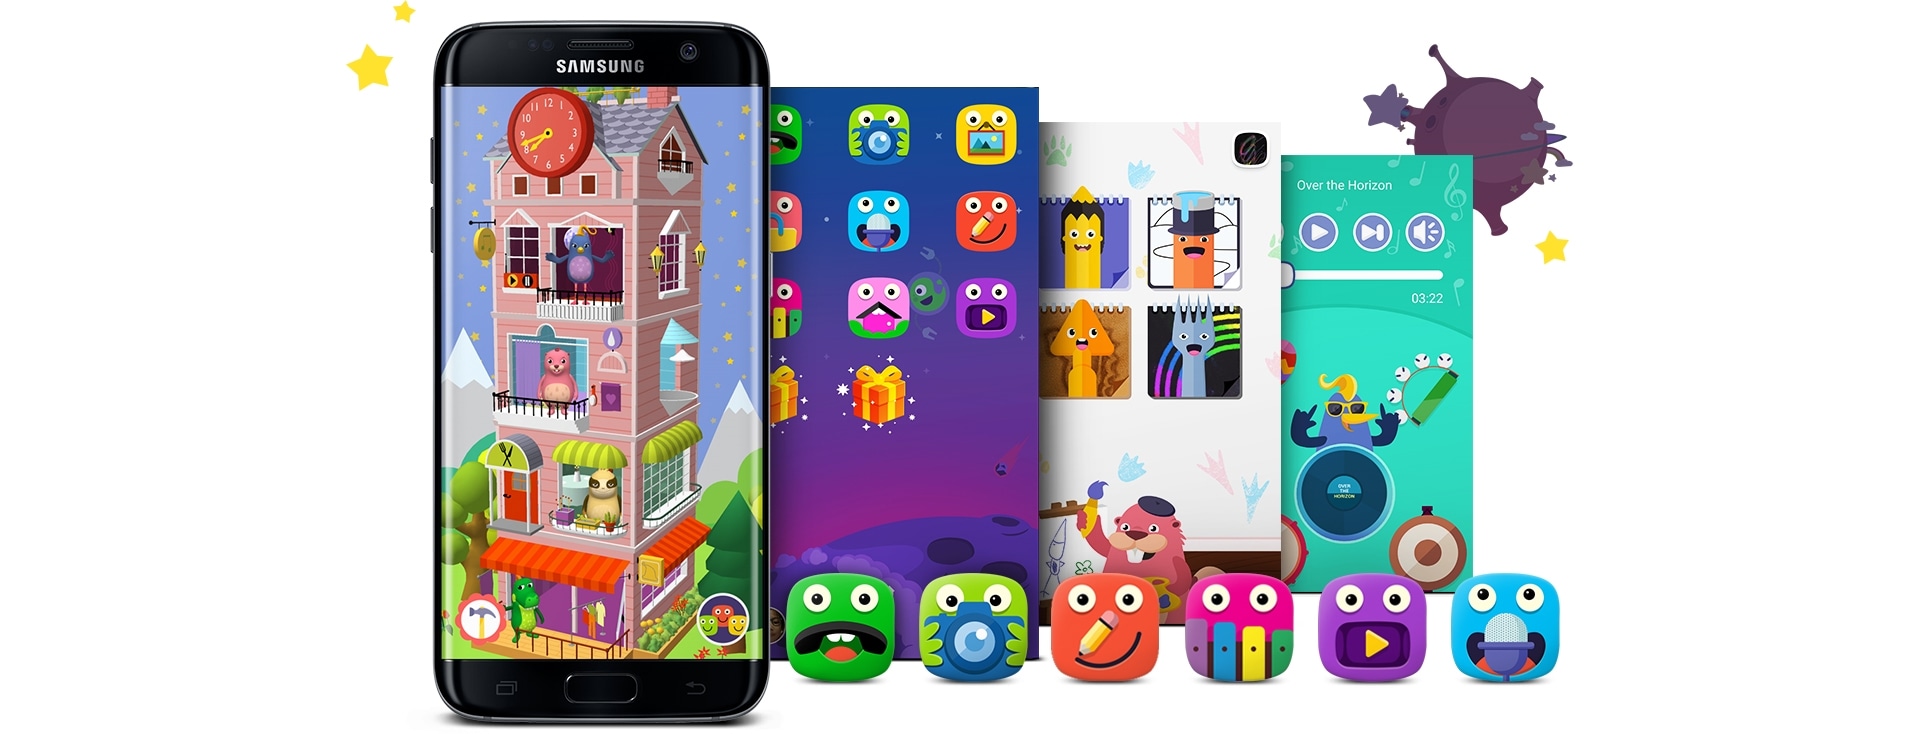 Resultado de imagen de Samsung Kids Mode